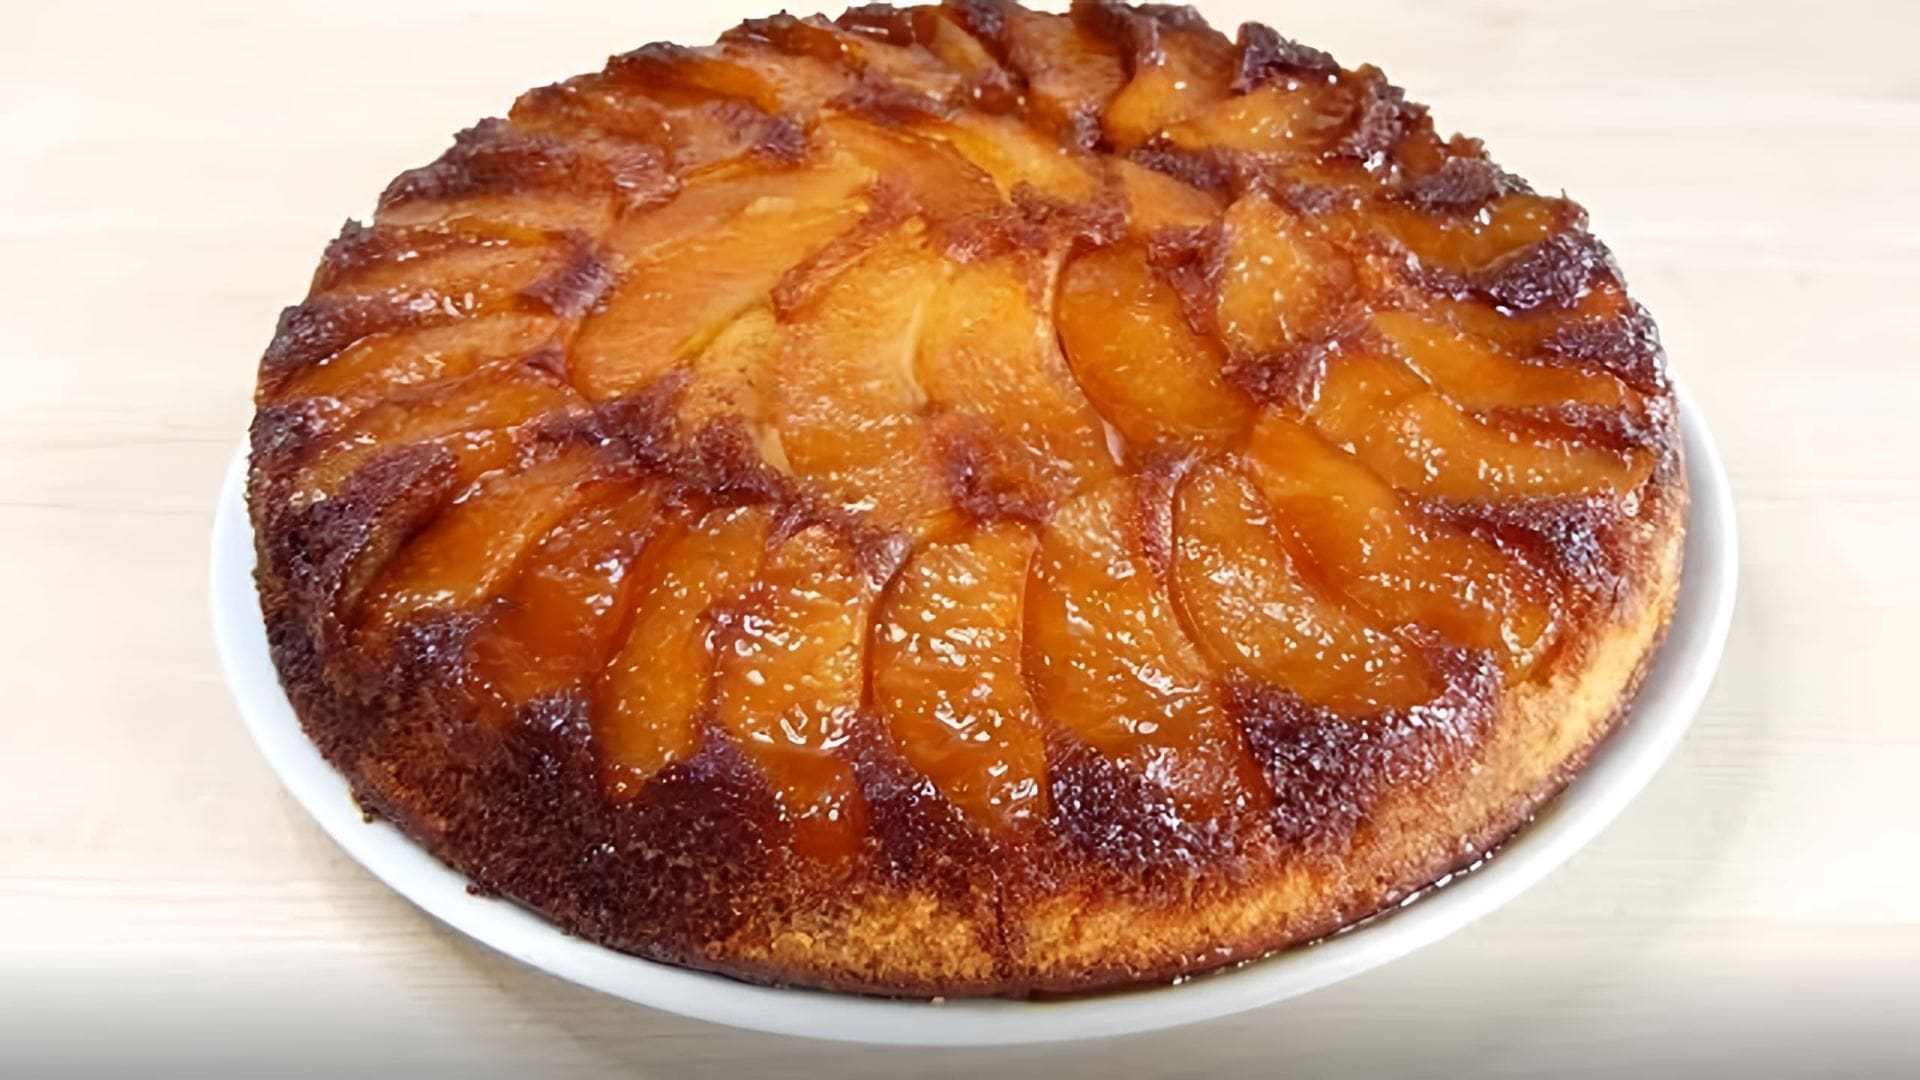 Пирог-перевёртыш с карамелизированными яблоками - это вкусный и оригинальный десерт, который можно приготовить в домашних условиях